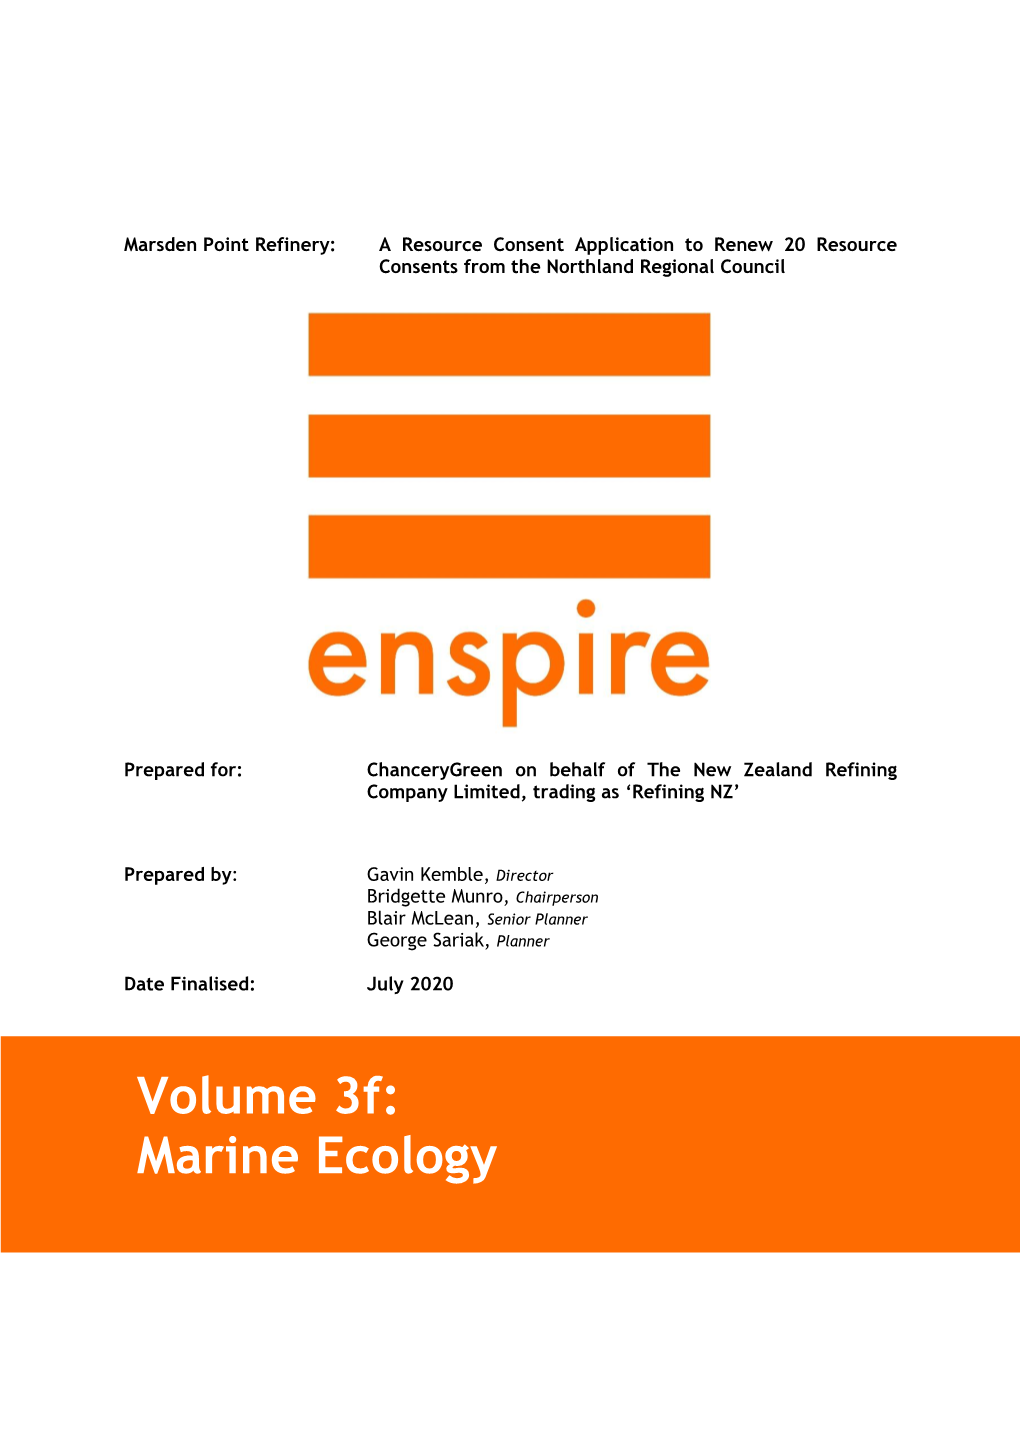 Marine Ecology